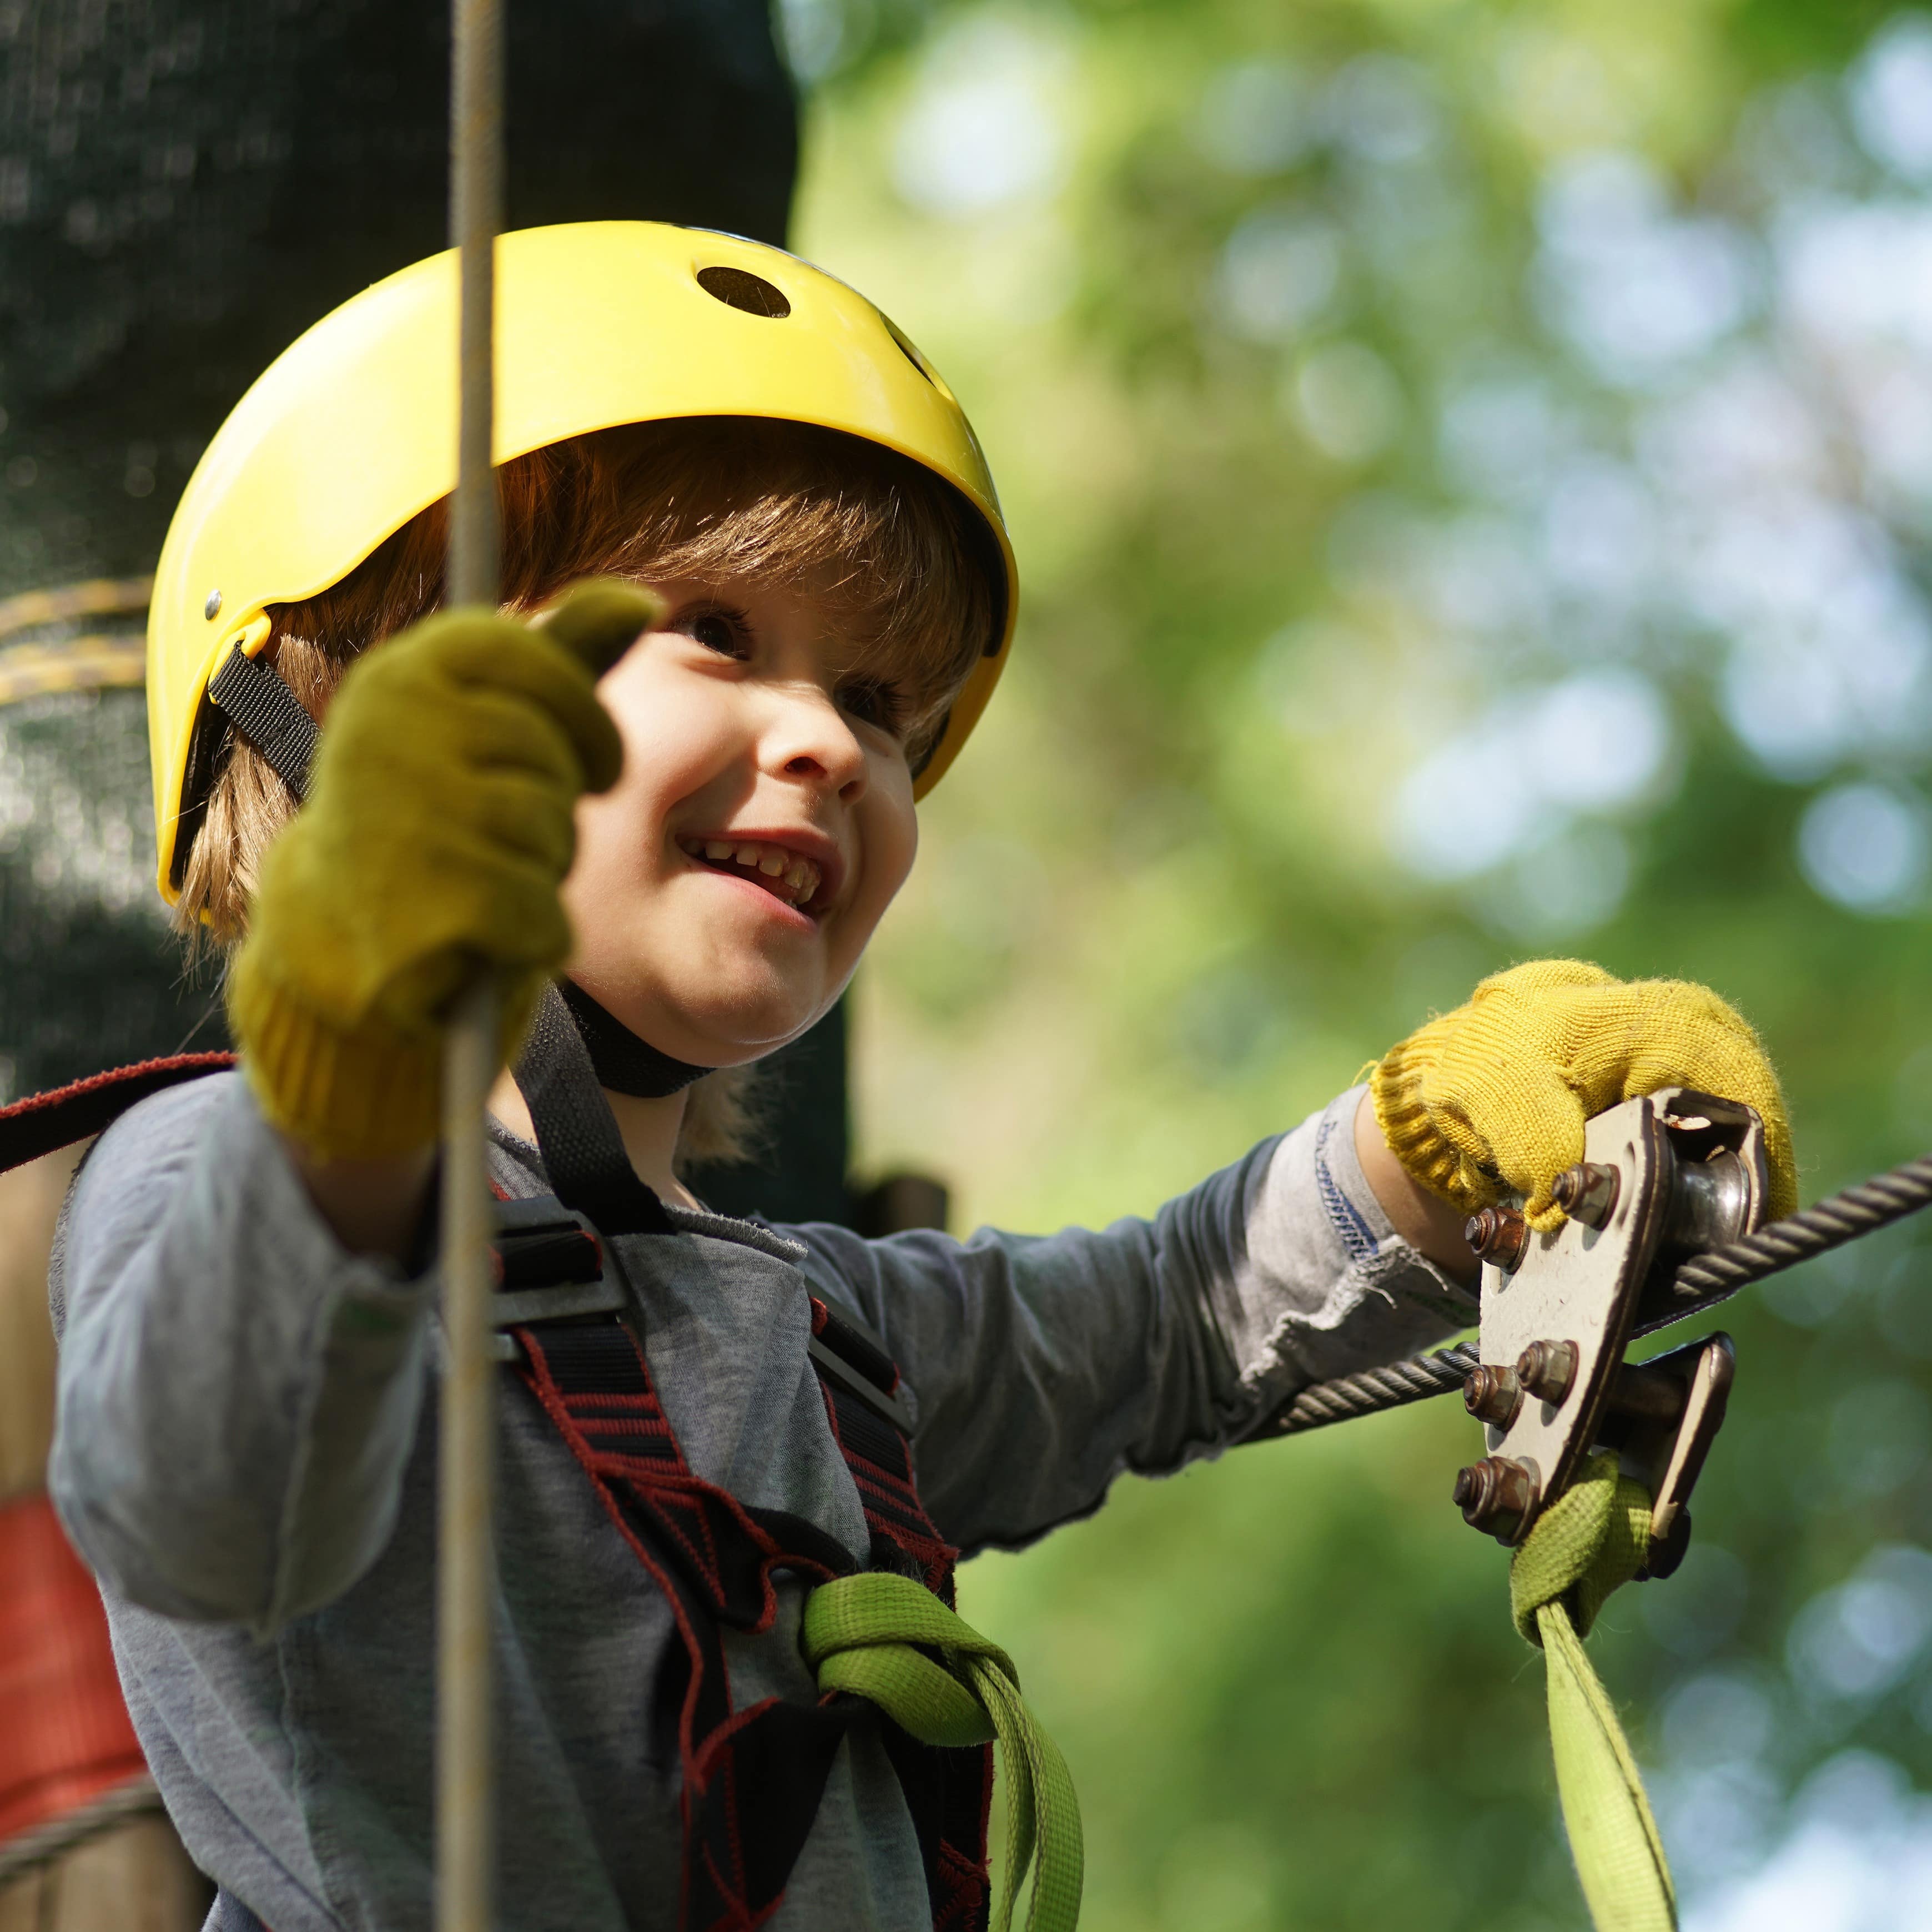 Nahaufnahme: Ein kleiner Junge mit gelbem Helm auf einem Kletterparcours.